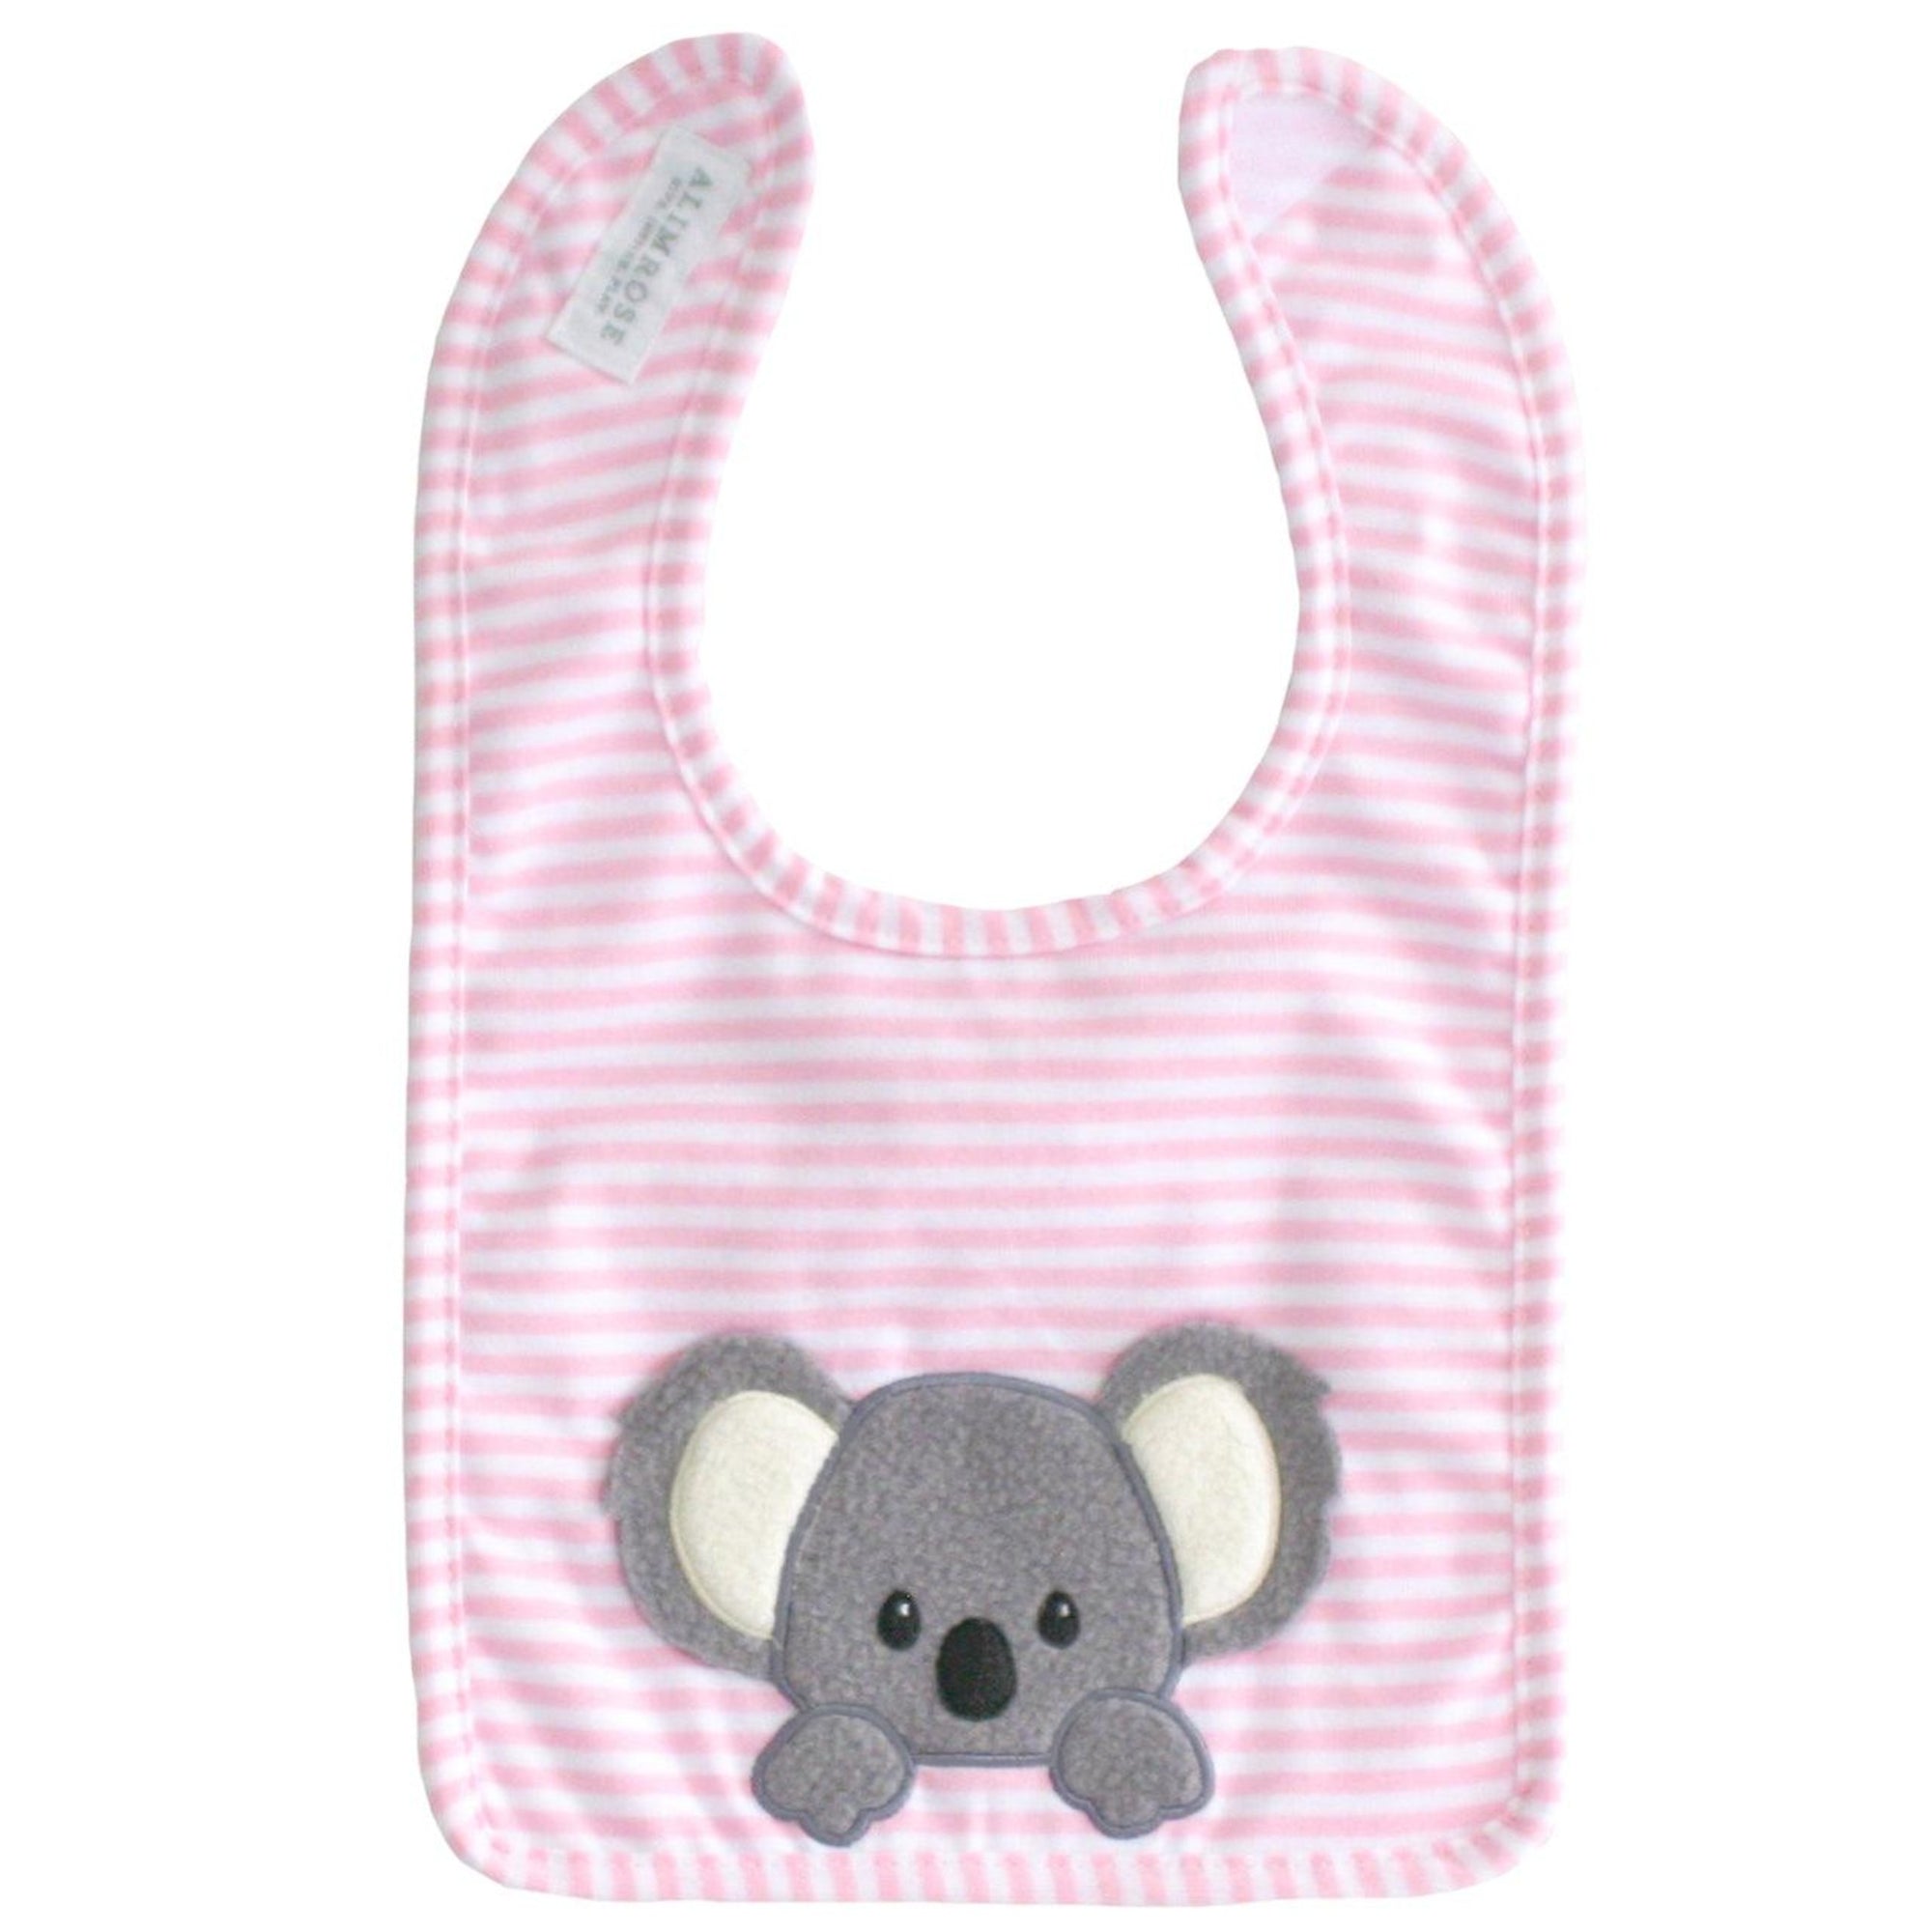 Alimrose Baby Koala Bib - Pink - Bib - Alimrose